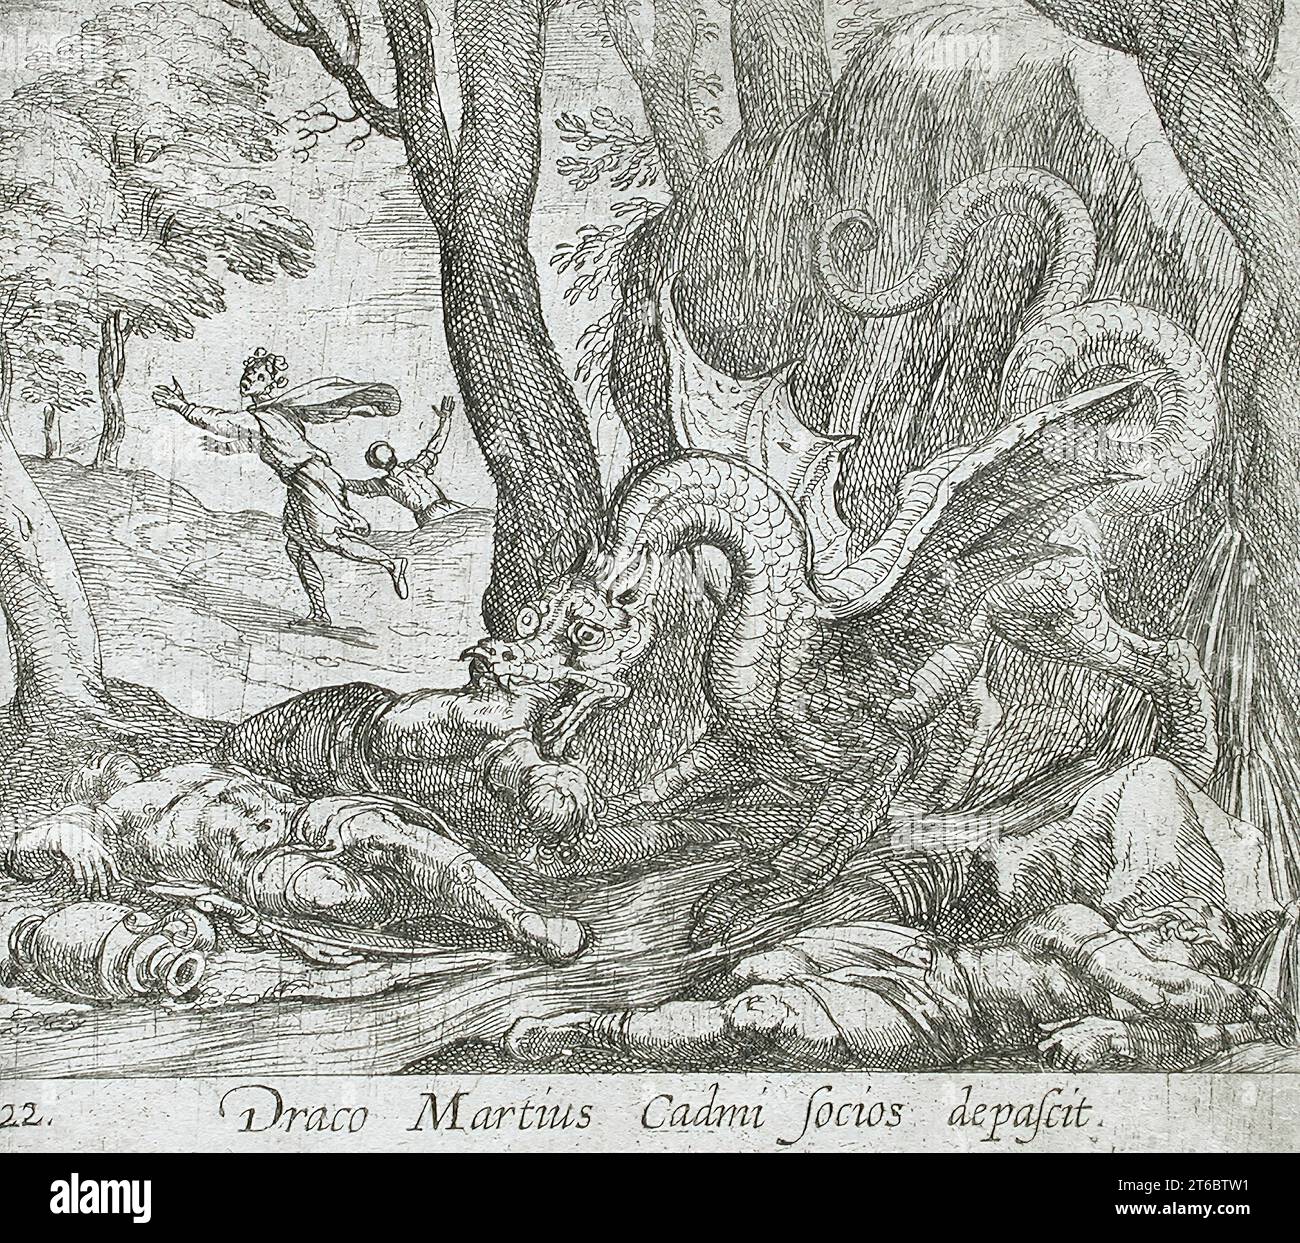 Cadmus's Men Killed by the Serpent, pubblicato nel 1606. Dalle Metamorfosi di Ovidio, PL. 22. Foto Stock